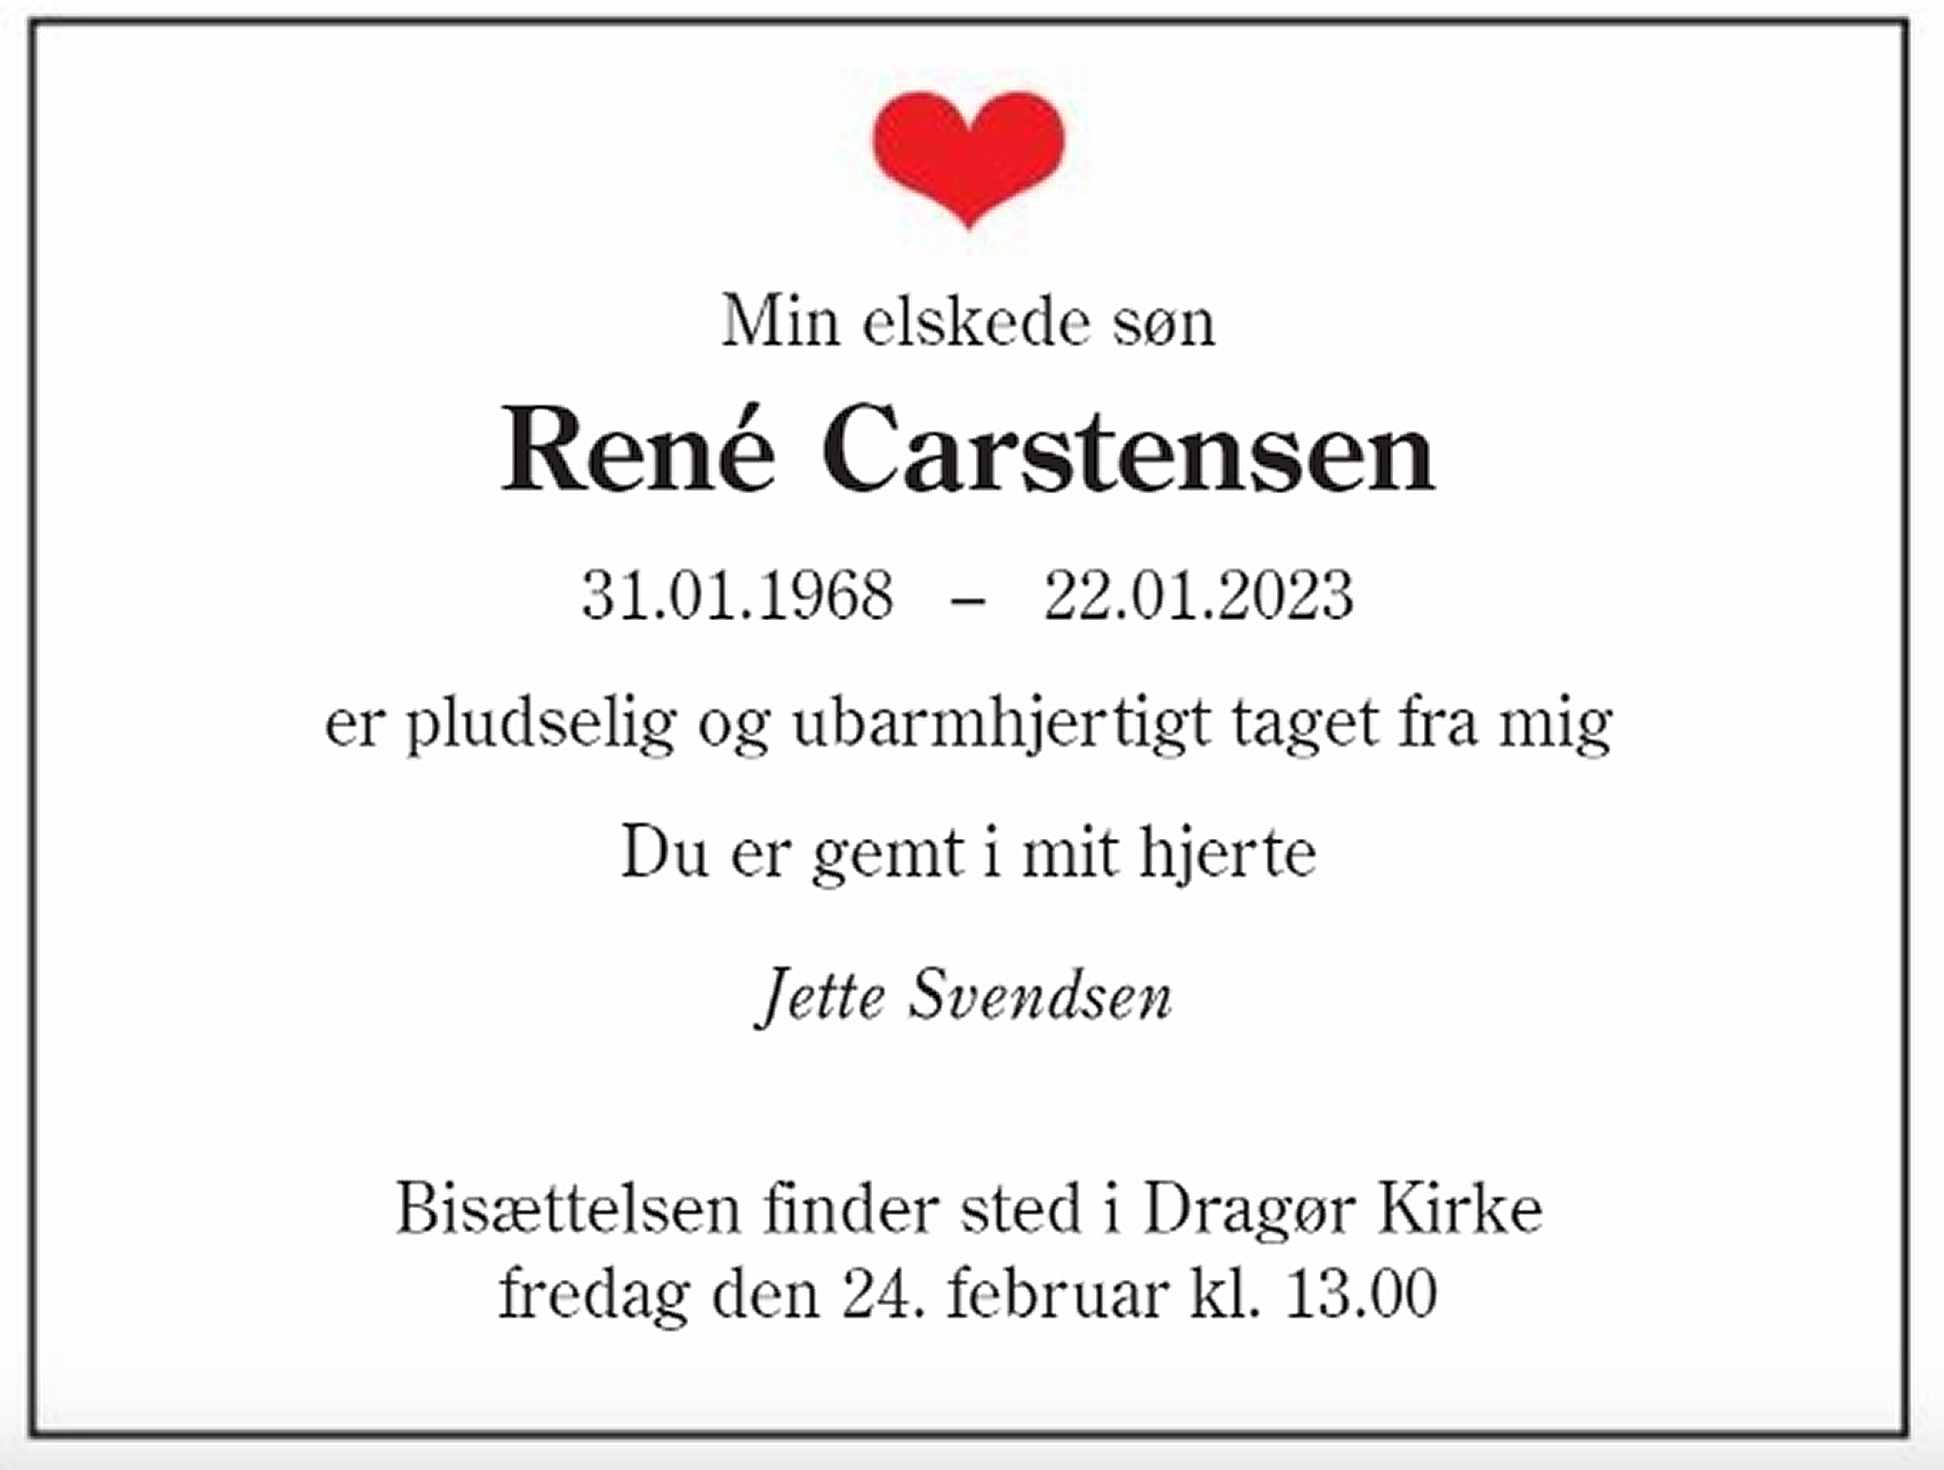 René Carstensen